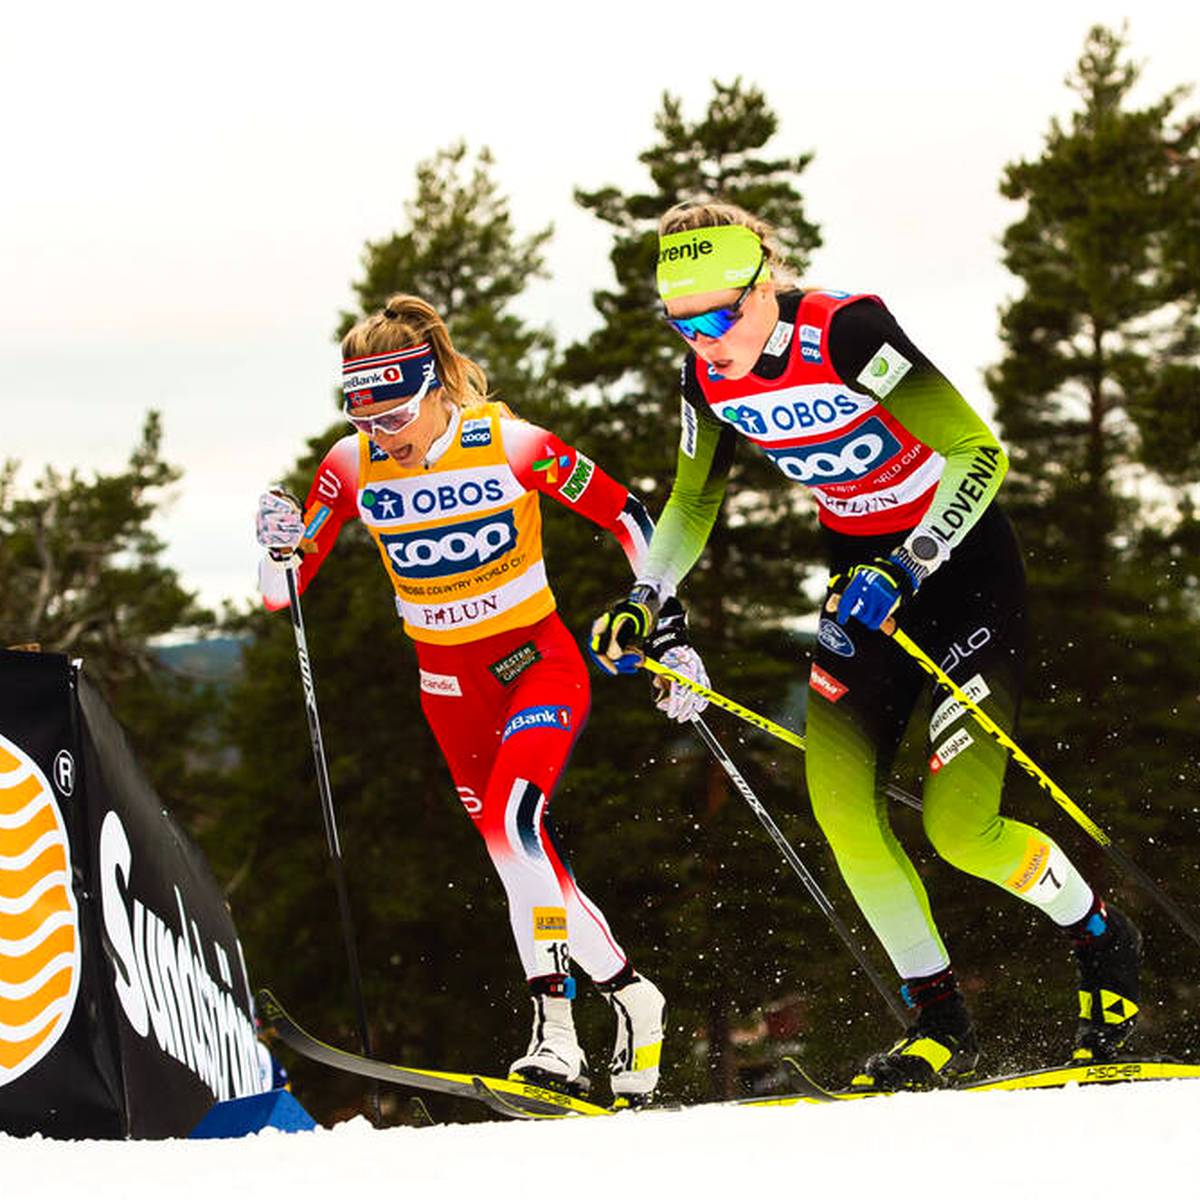 Damit hatte keiner gerechnet - Sprint-Ass Anamarija Lampic macht Schluss mit Langlauf. Die Slowenin versucht sich stattdessen als Biathletin. Ihre Vorgängerinnen Denise Herrmann und Stina Nilsson freut dies. 